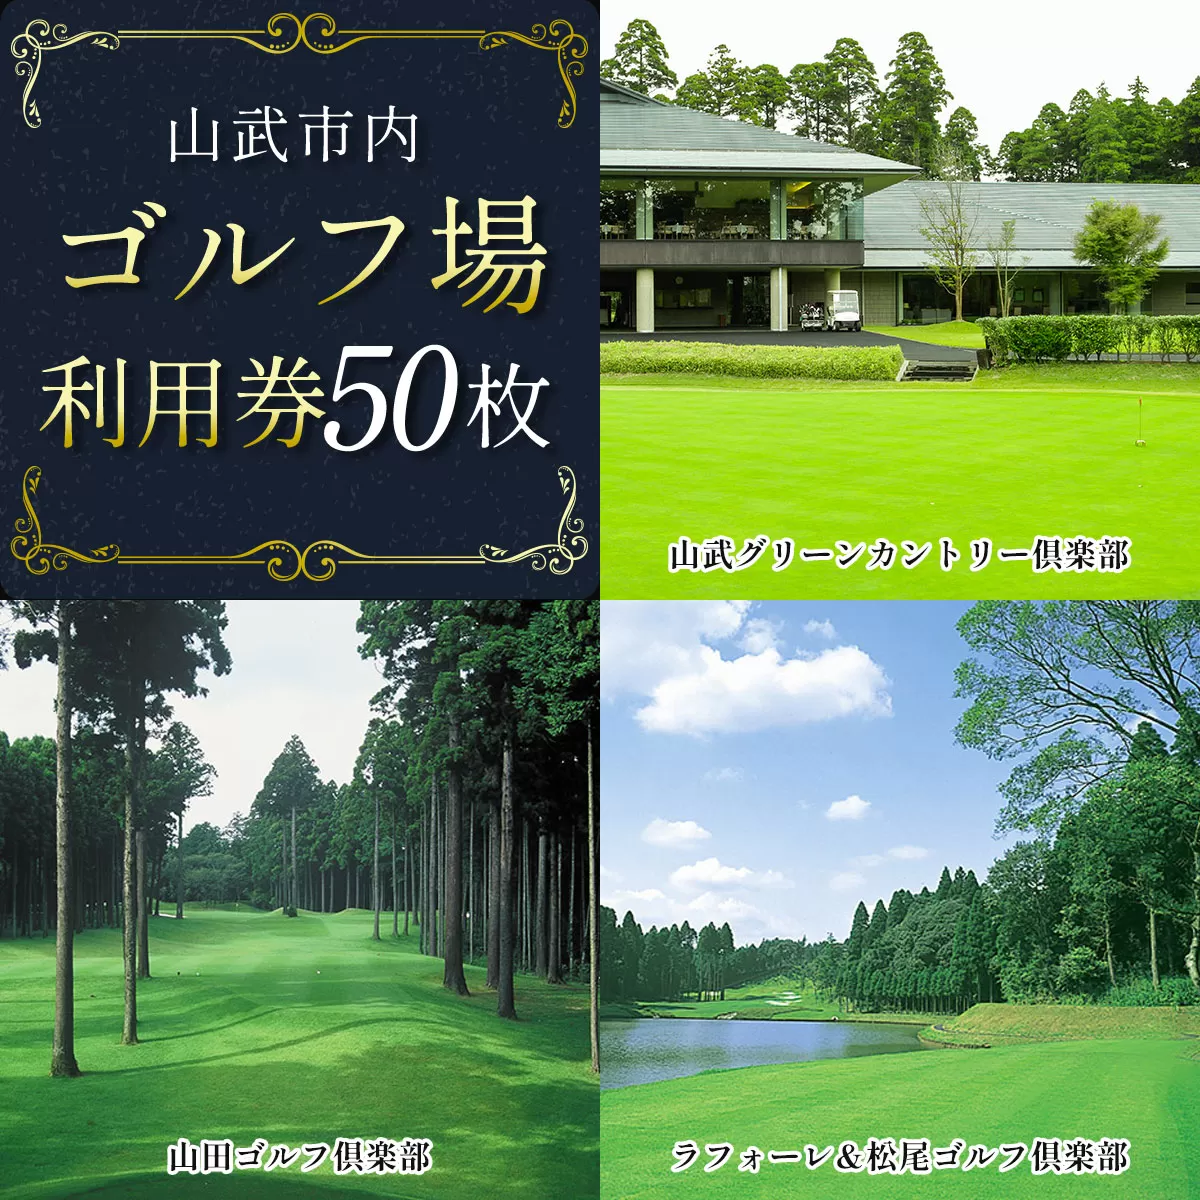 【山武市内】ゴルフ場利用券50枚 SMBJ014